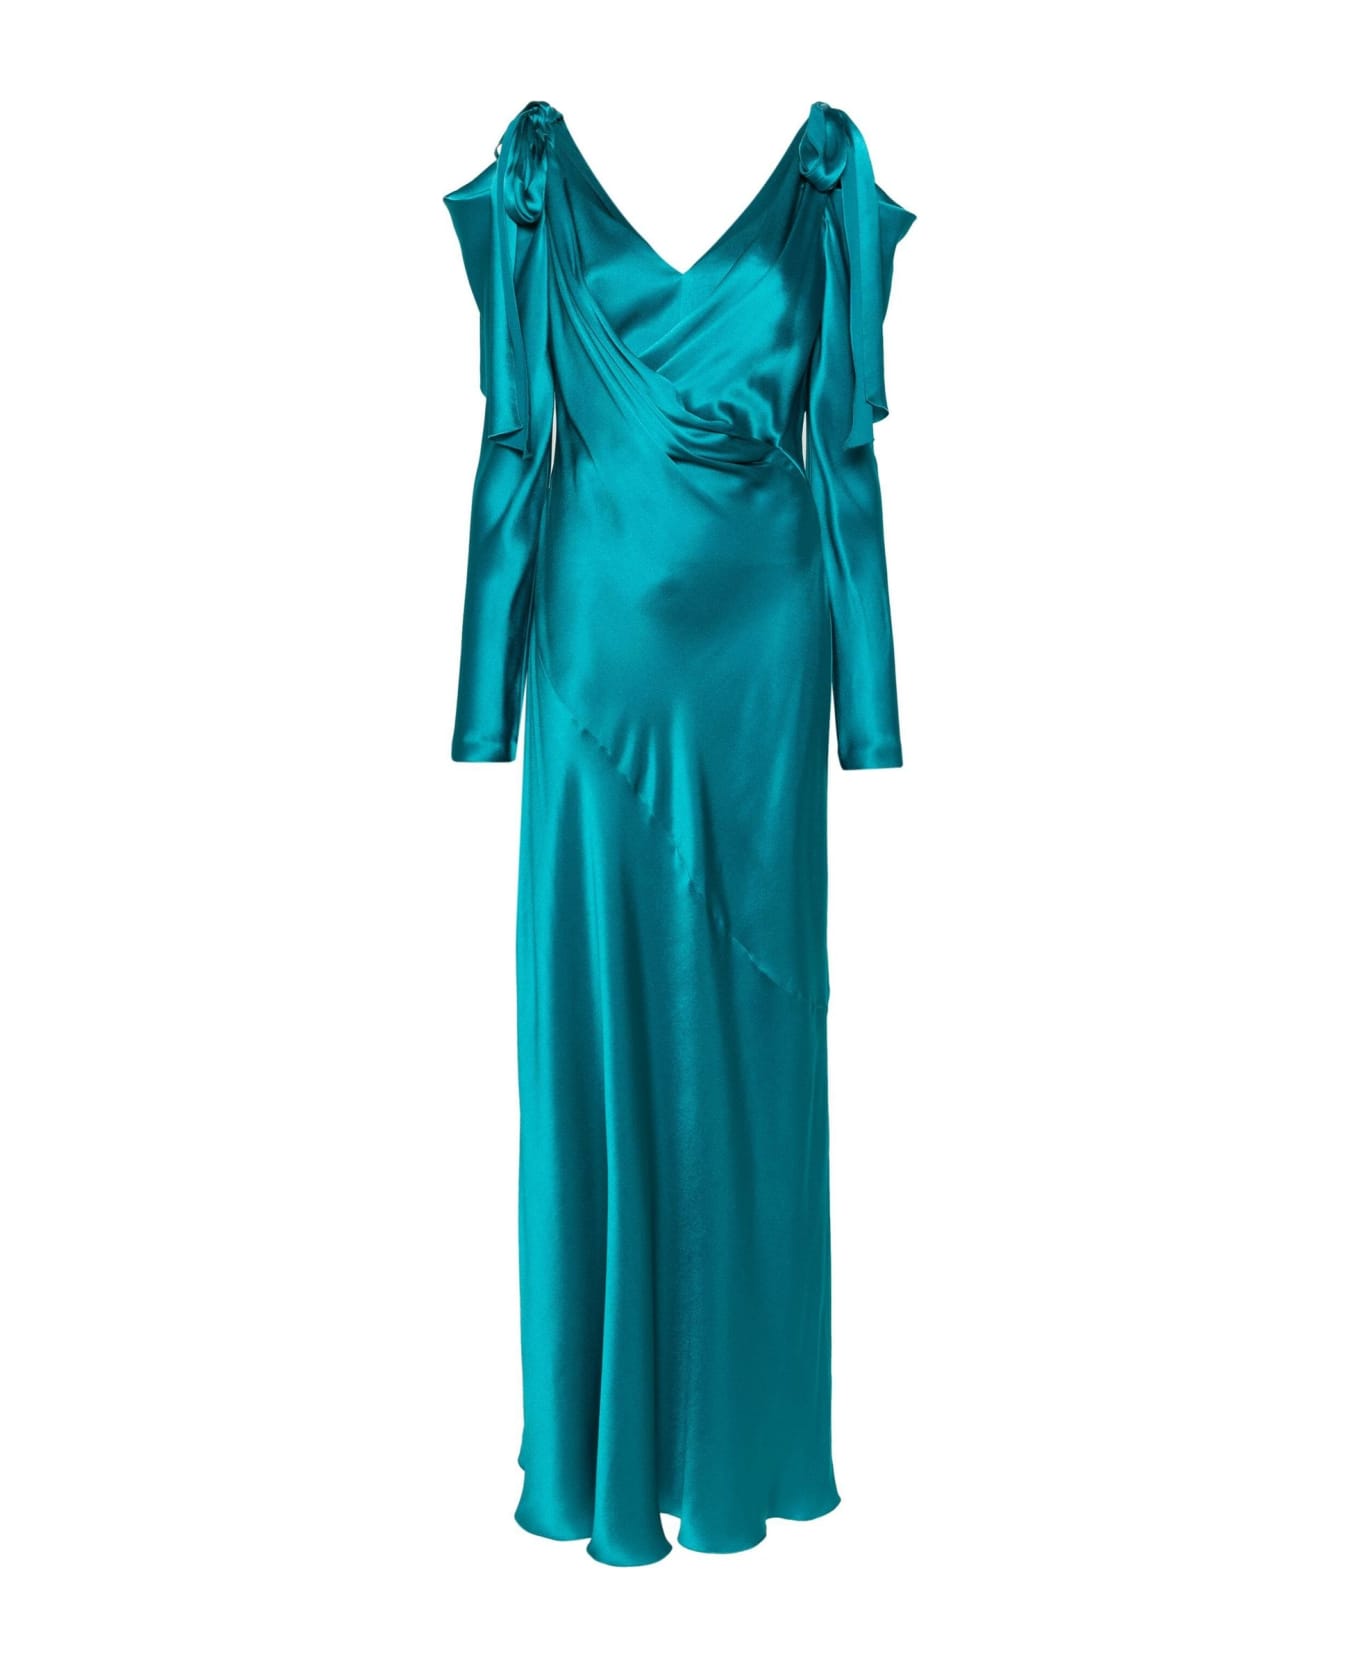 Alberta Ferretti Aqua Green Satin Finish Maxi Dress - Blue